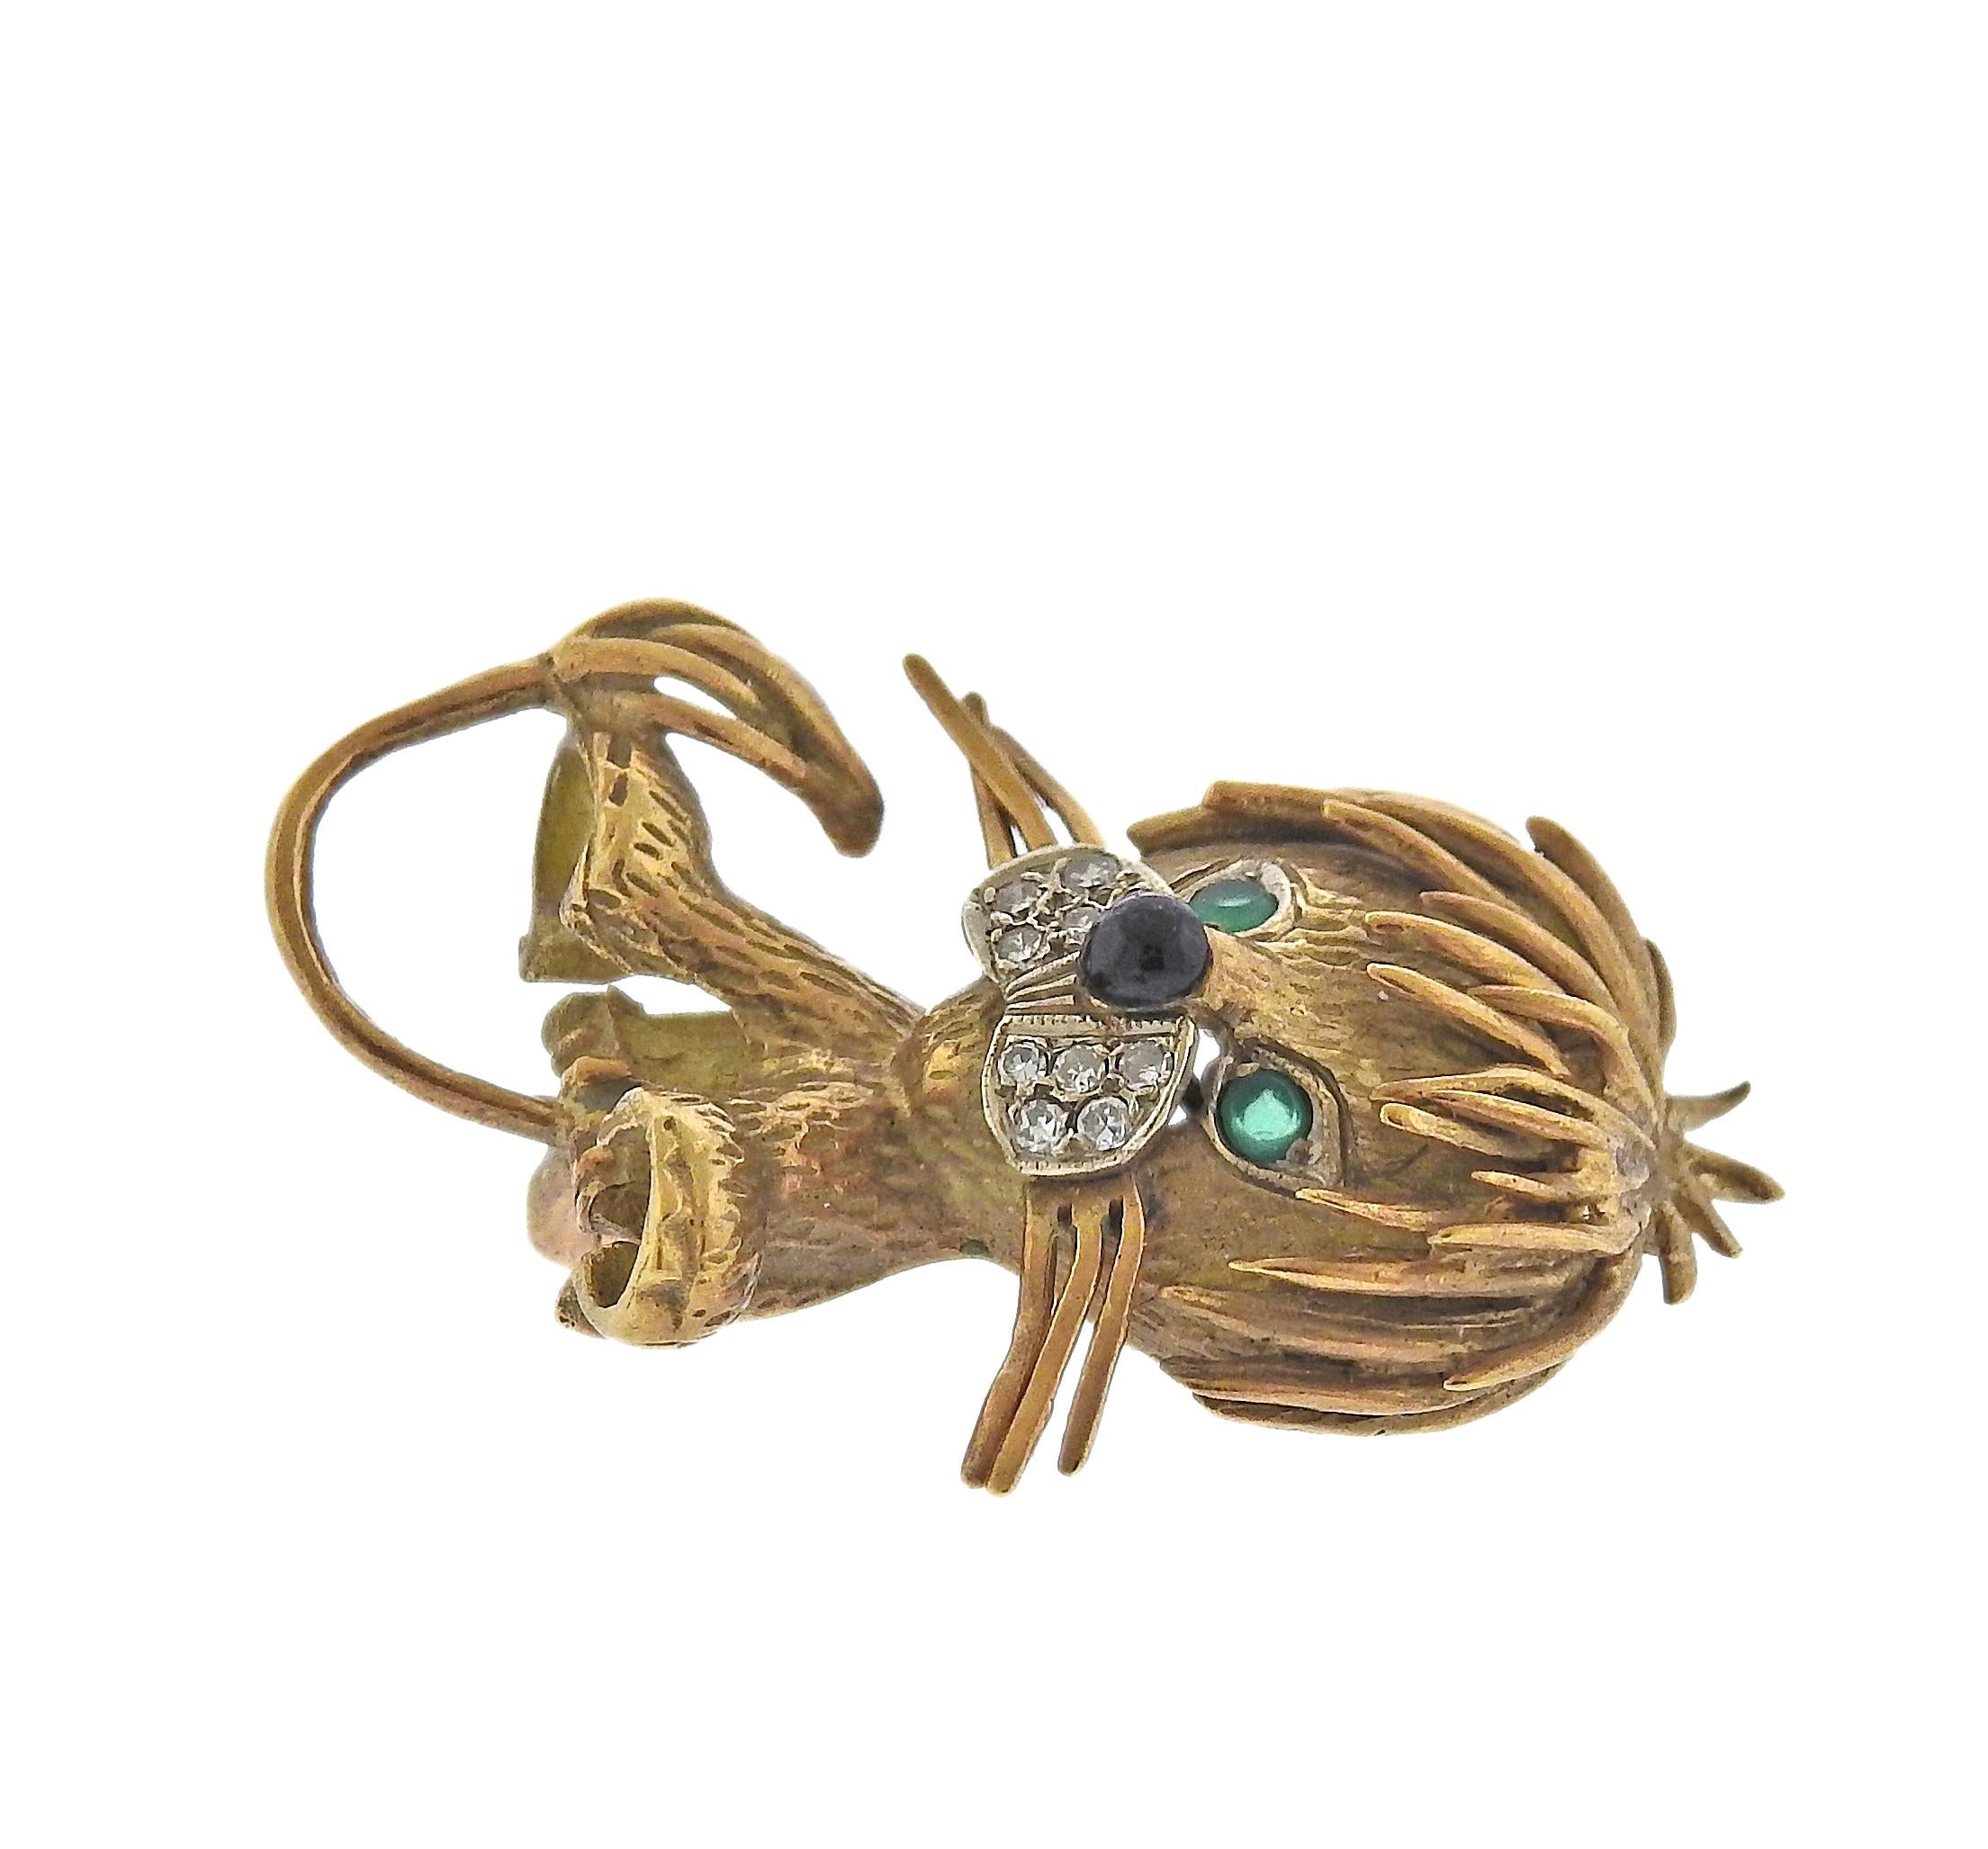 Vintage, ca. 1960er Jahre 18k Gold Löwenbrosche, verziert mit Diamanten, Smaragd Augen und Onyx Nase. Die Brosche misst 34 mm x 22 mm. Gezeichnet 18k. Gewicht - 8,7 Gramm.